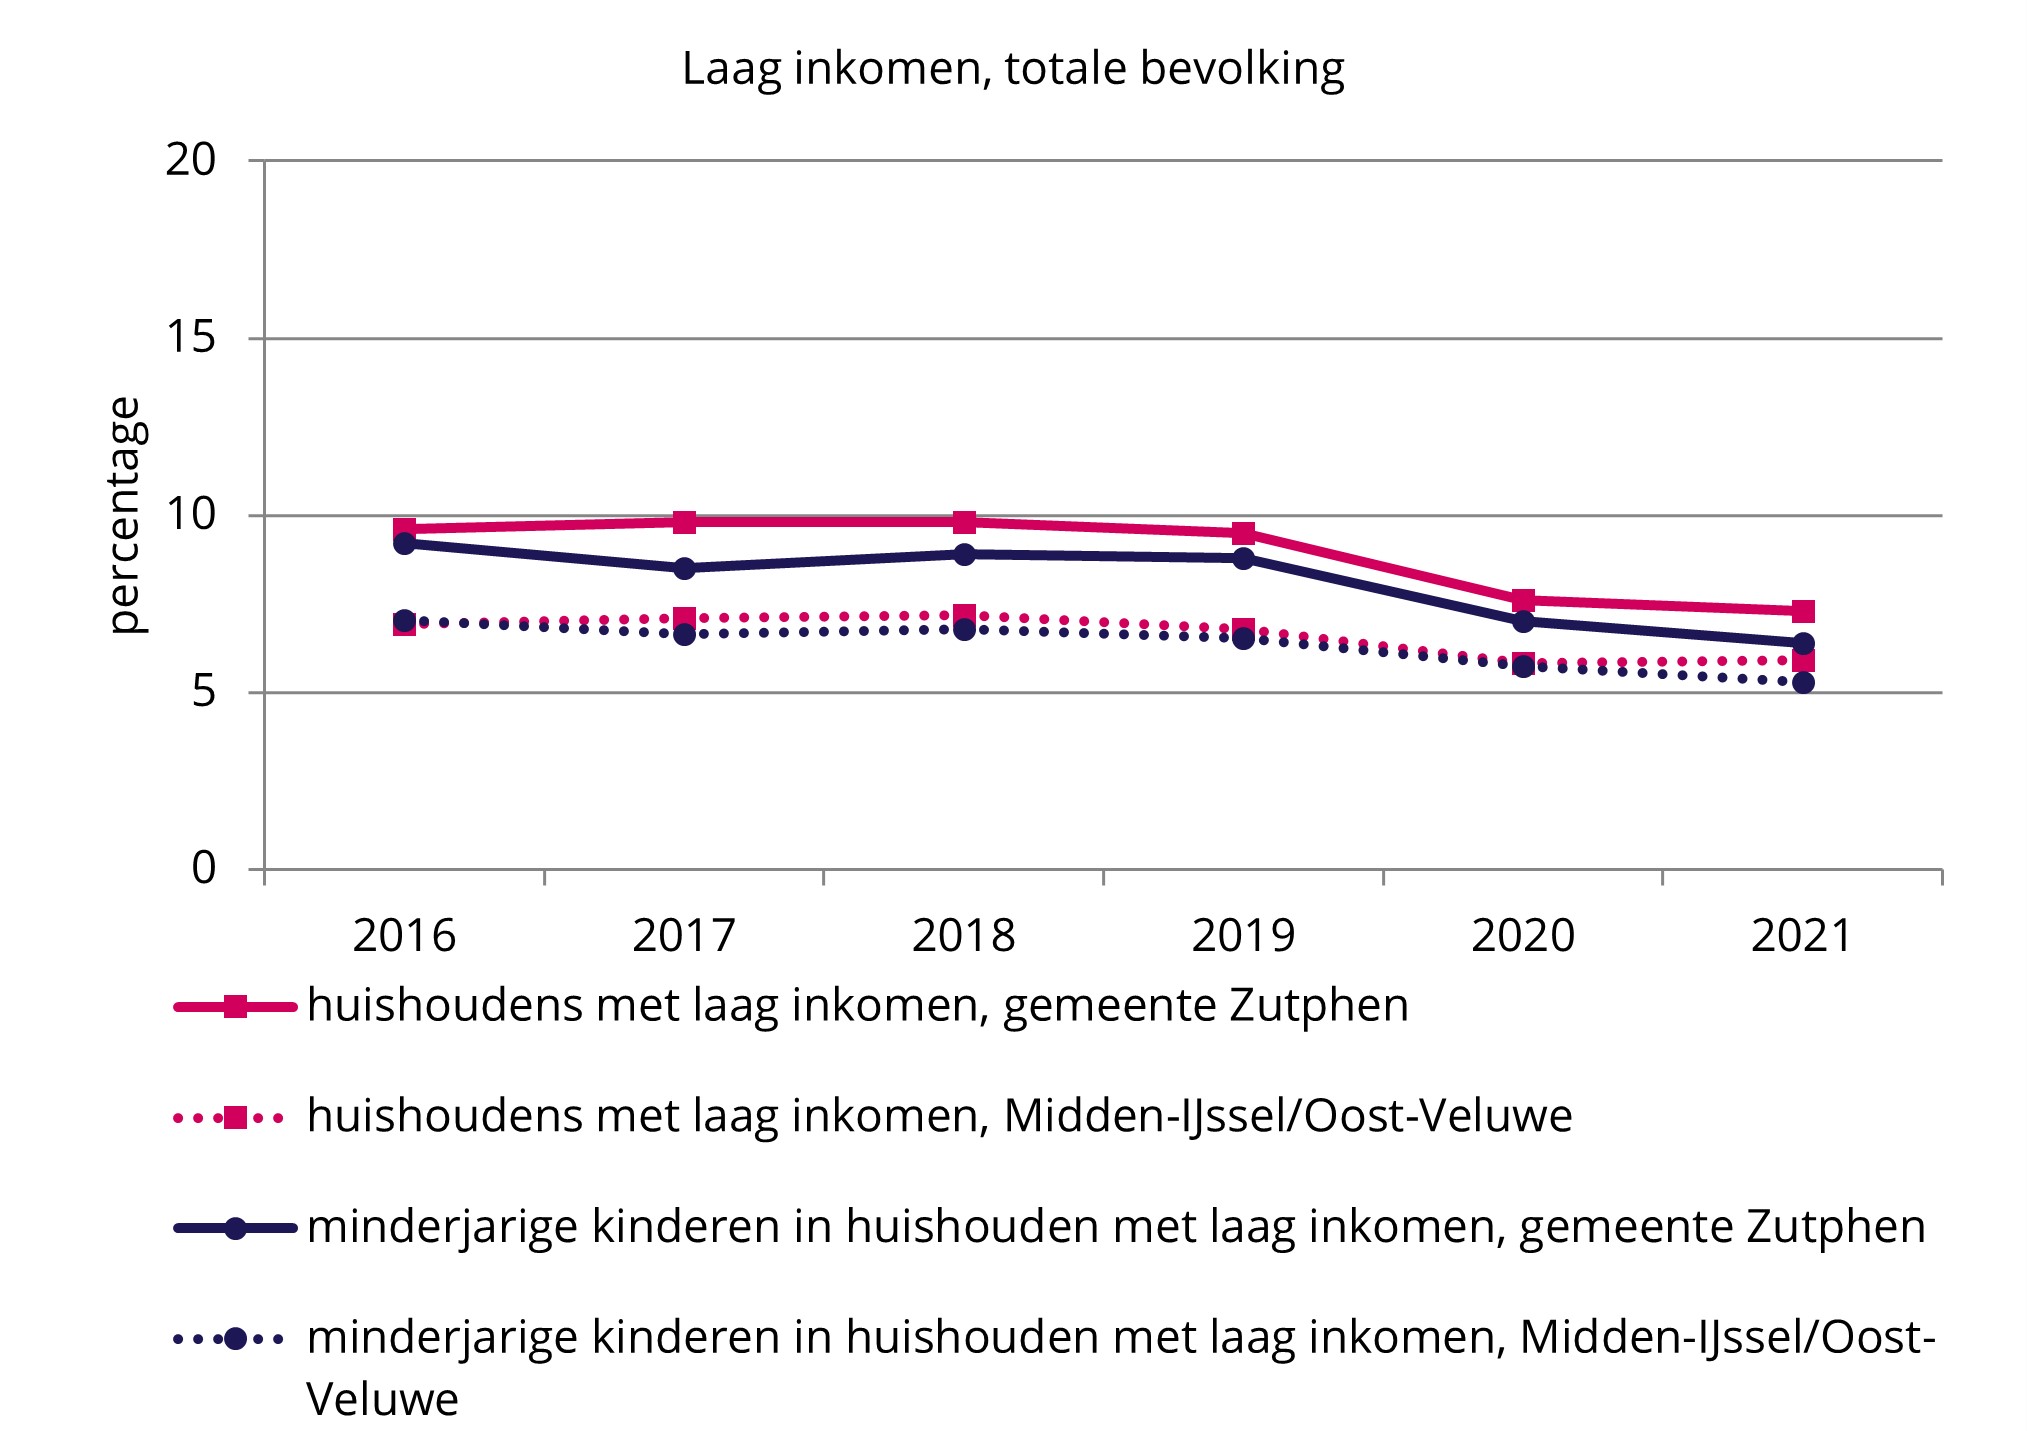 B huishoudens met laag inkomen Zutphen